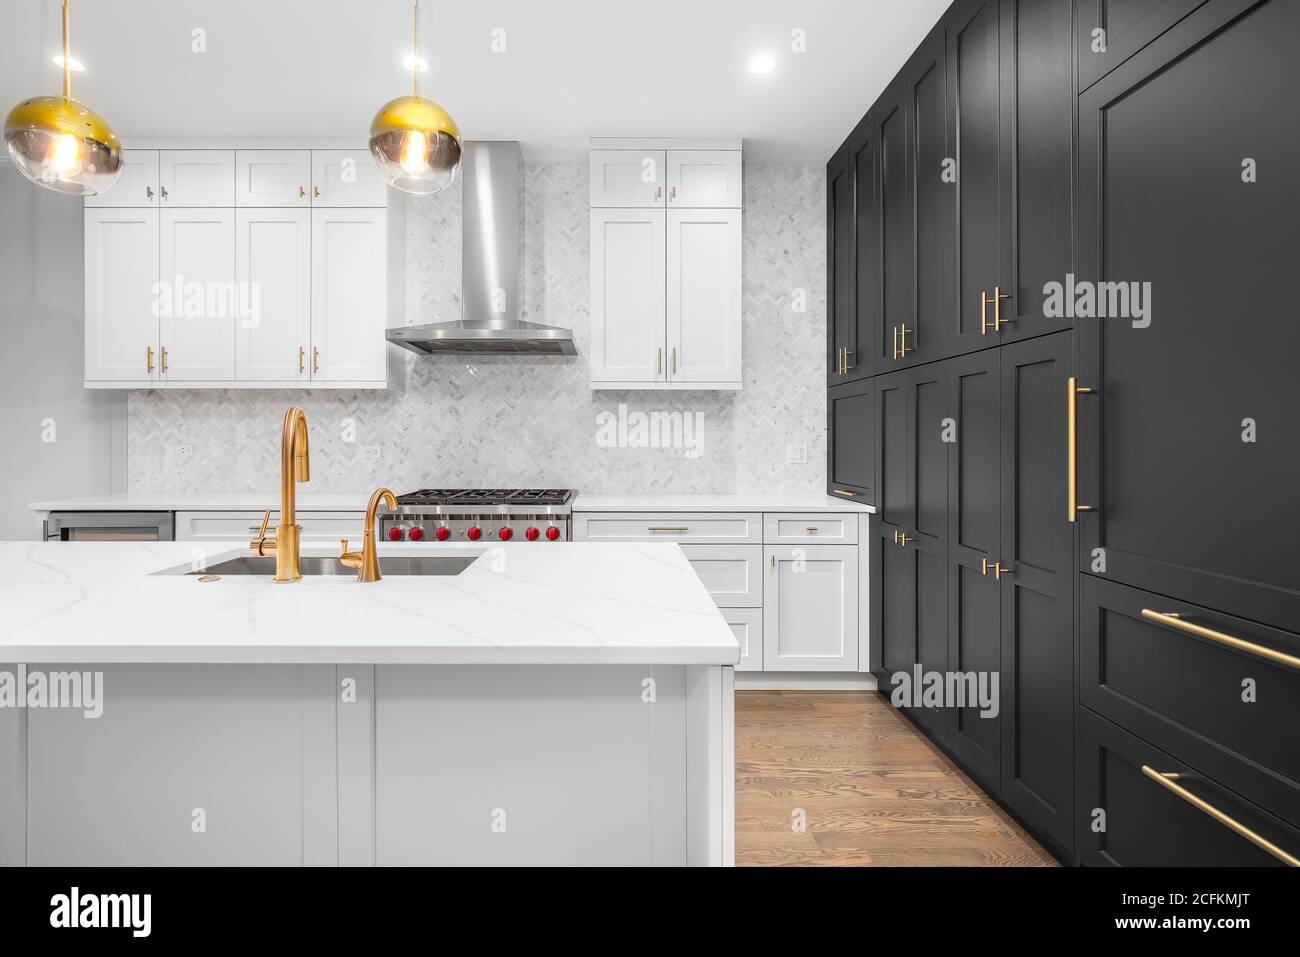 Eine luxuriöse, moderne Küche mit weißen und schwarzen Schränken, goldenen Armaturen und weißen Fischgrätfliesen. Stockfoto